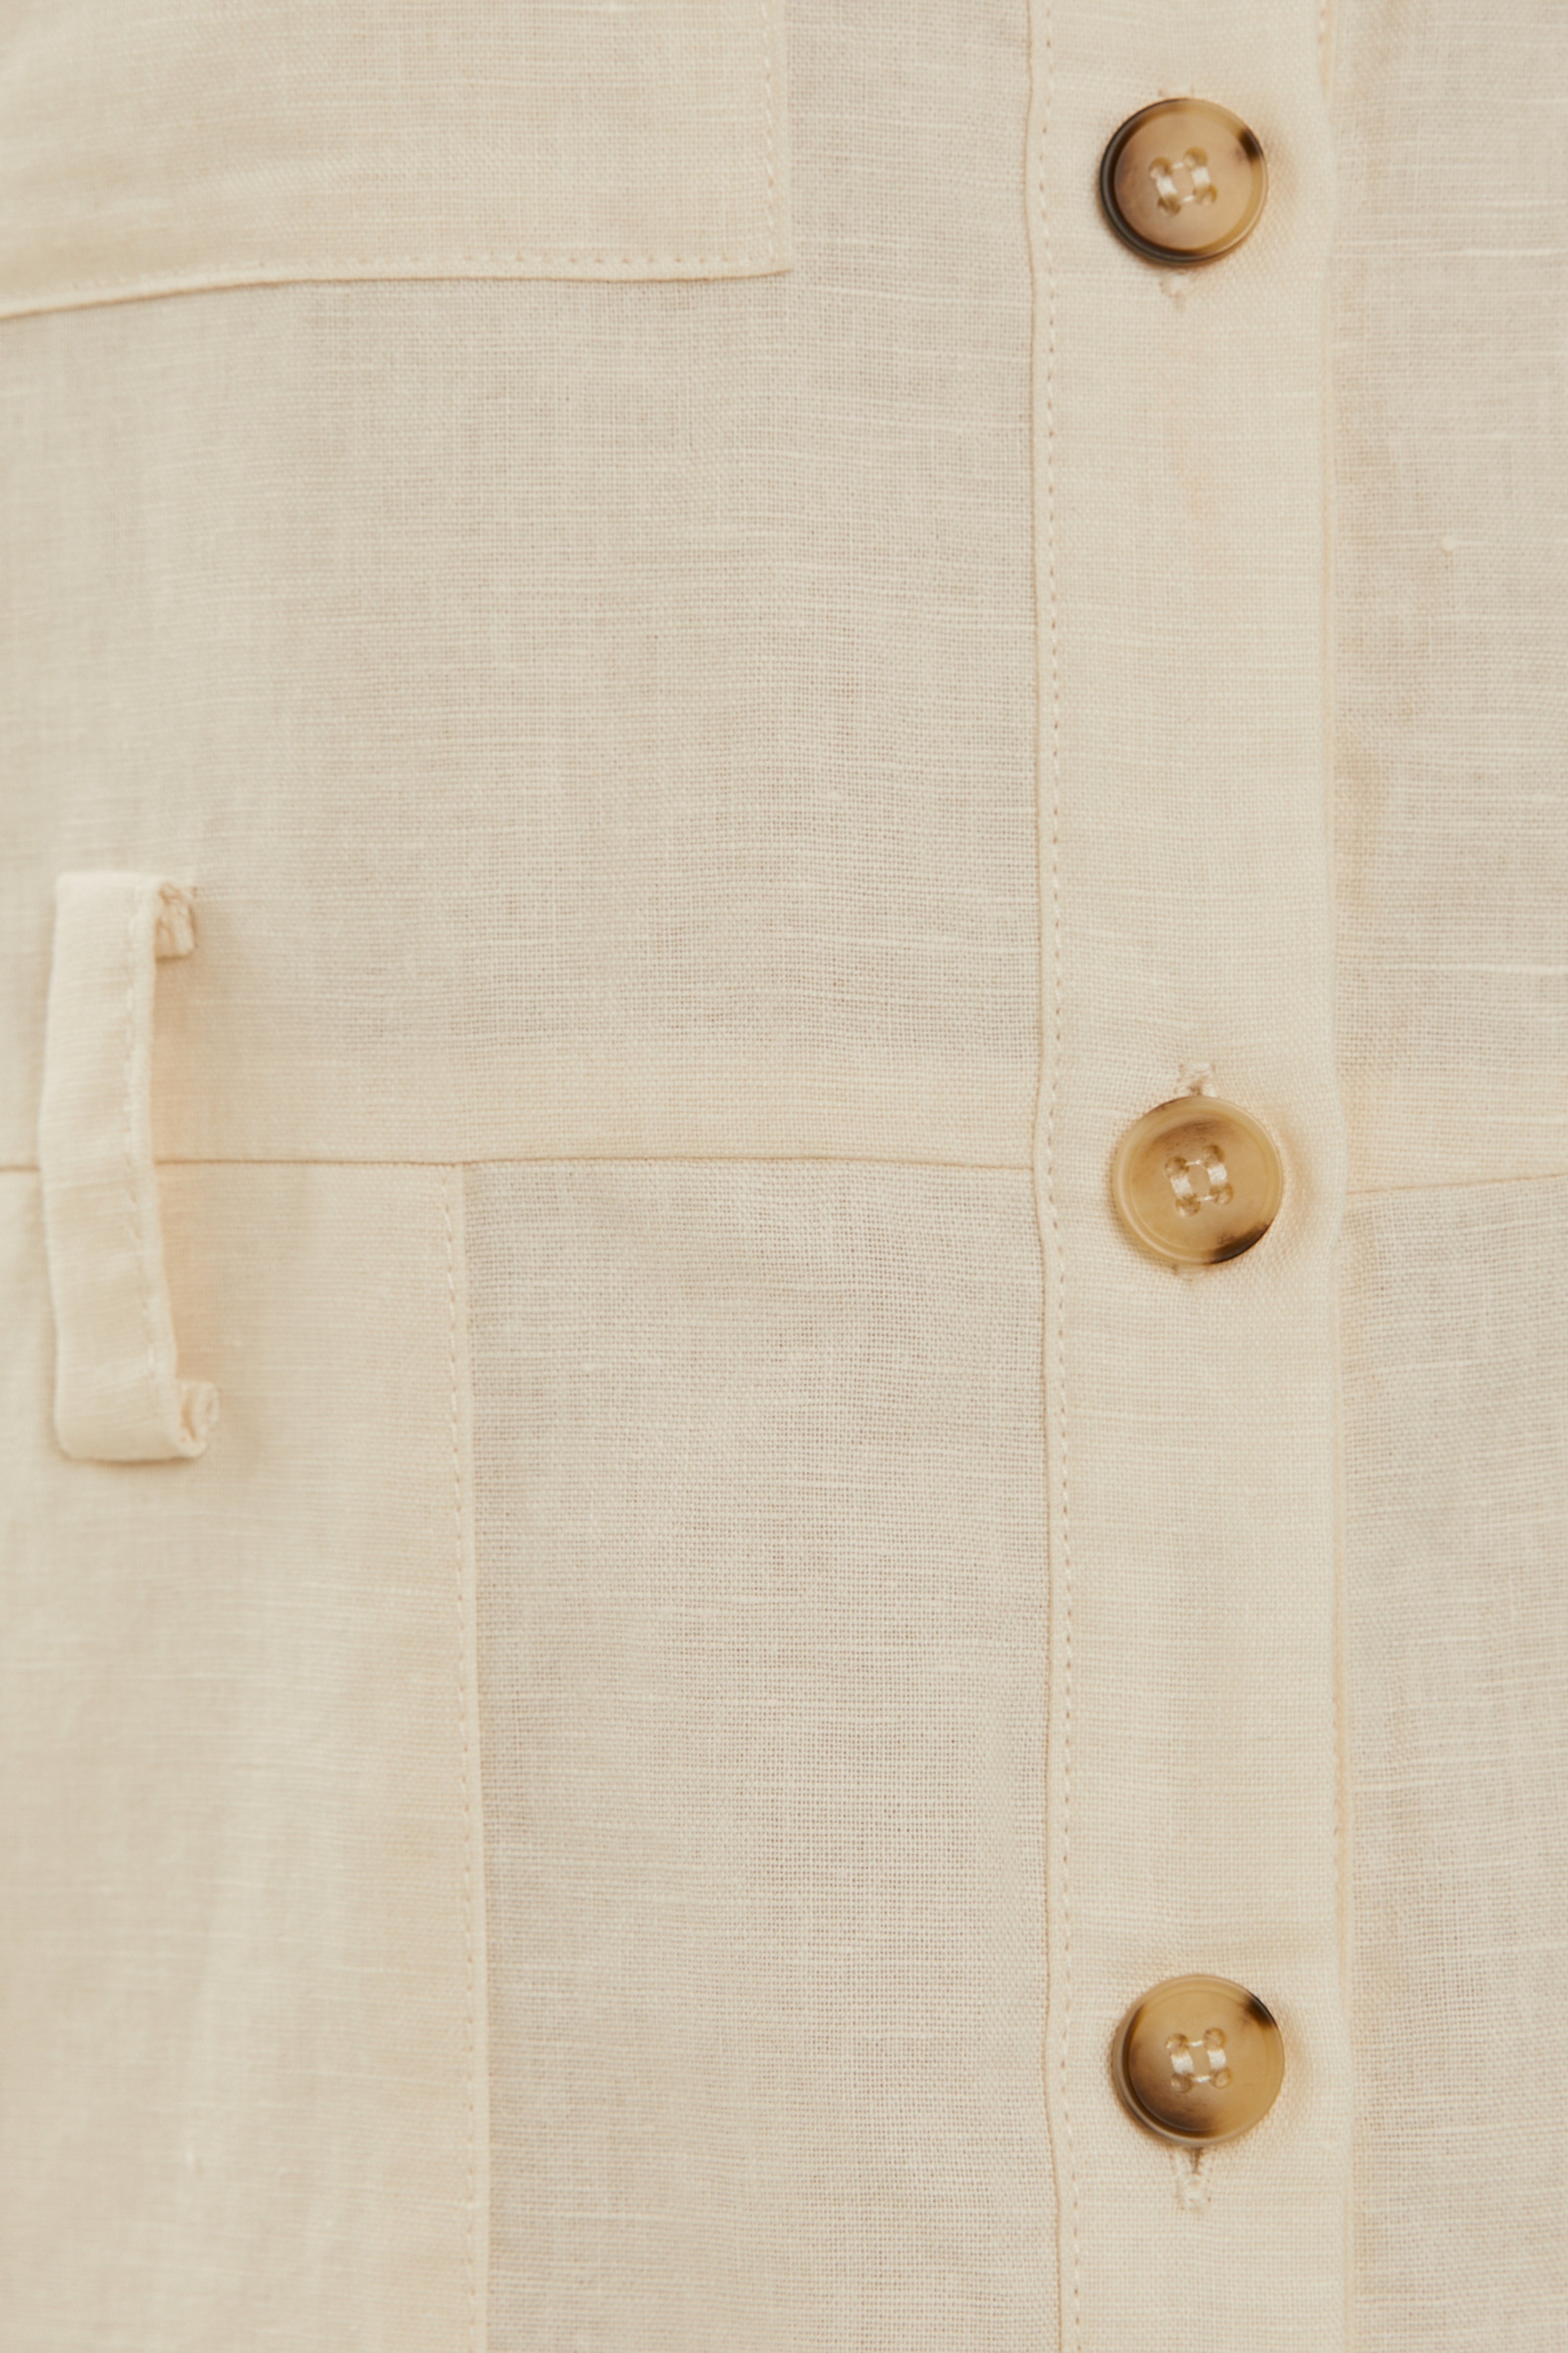 Linen Shirt Dress in Ivory